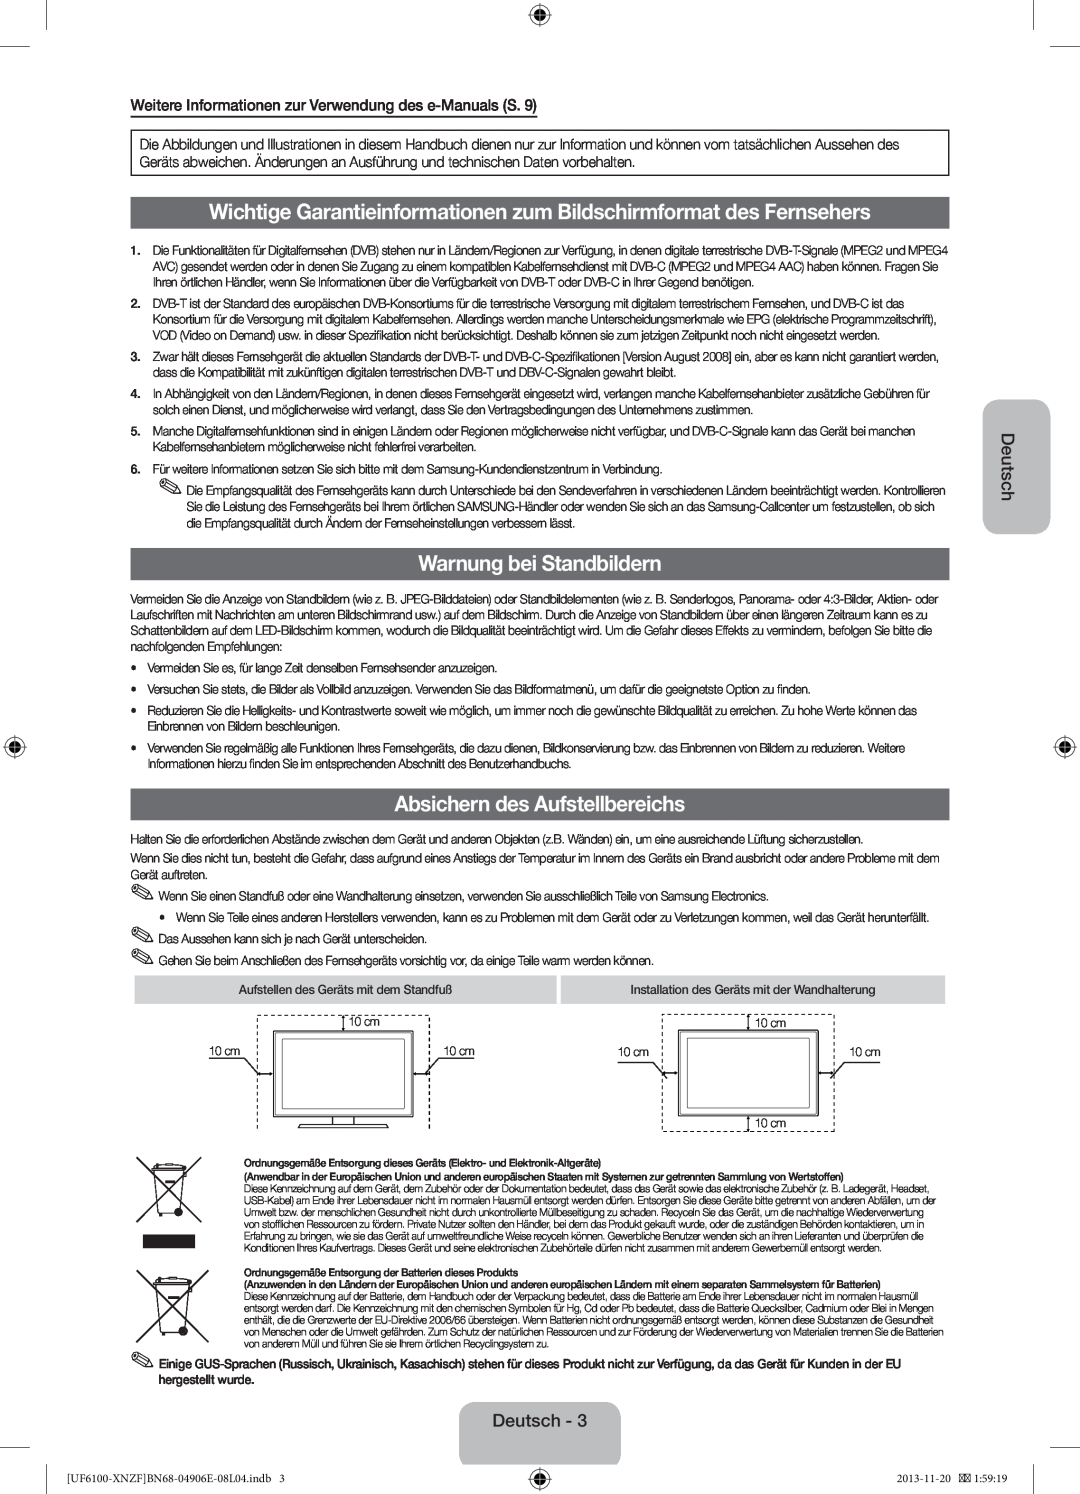 Samsung UE46F6100AWXZG manual Wichtige Garantieinformationen zum Bildschirmformat des Fernsehers, Warnung bei Standbildern 